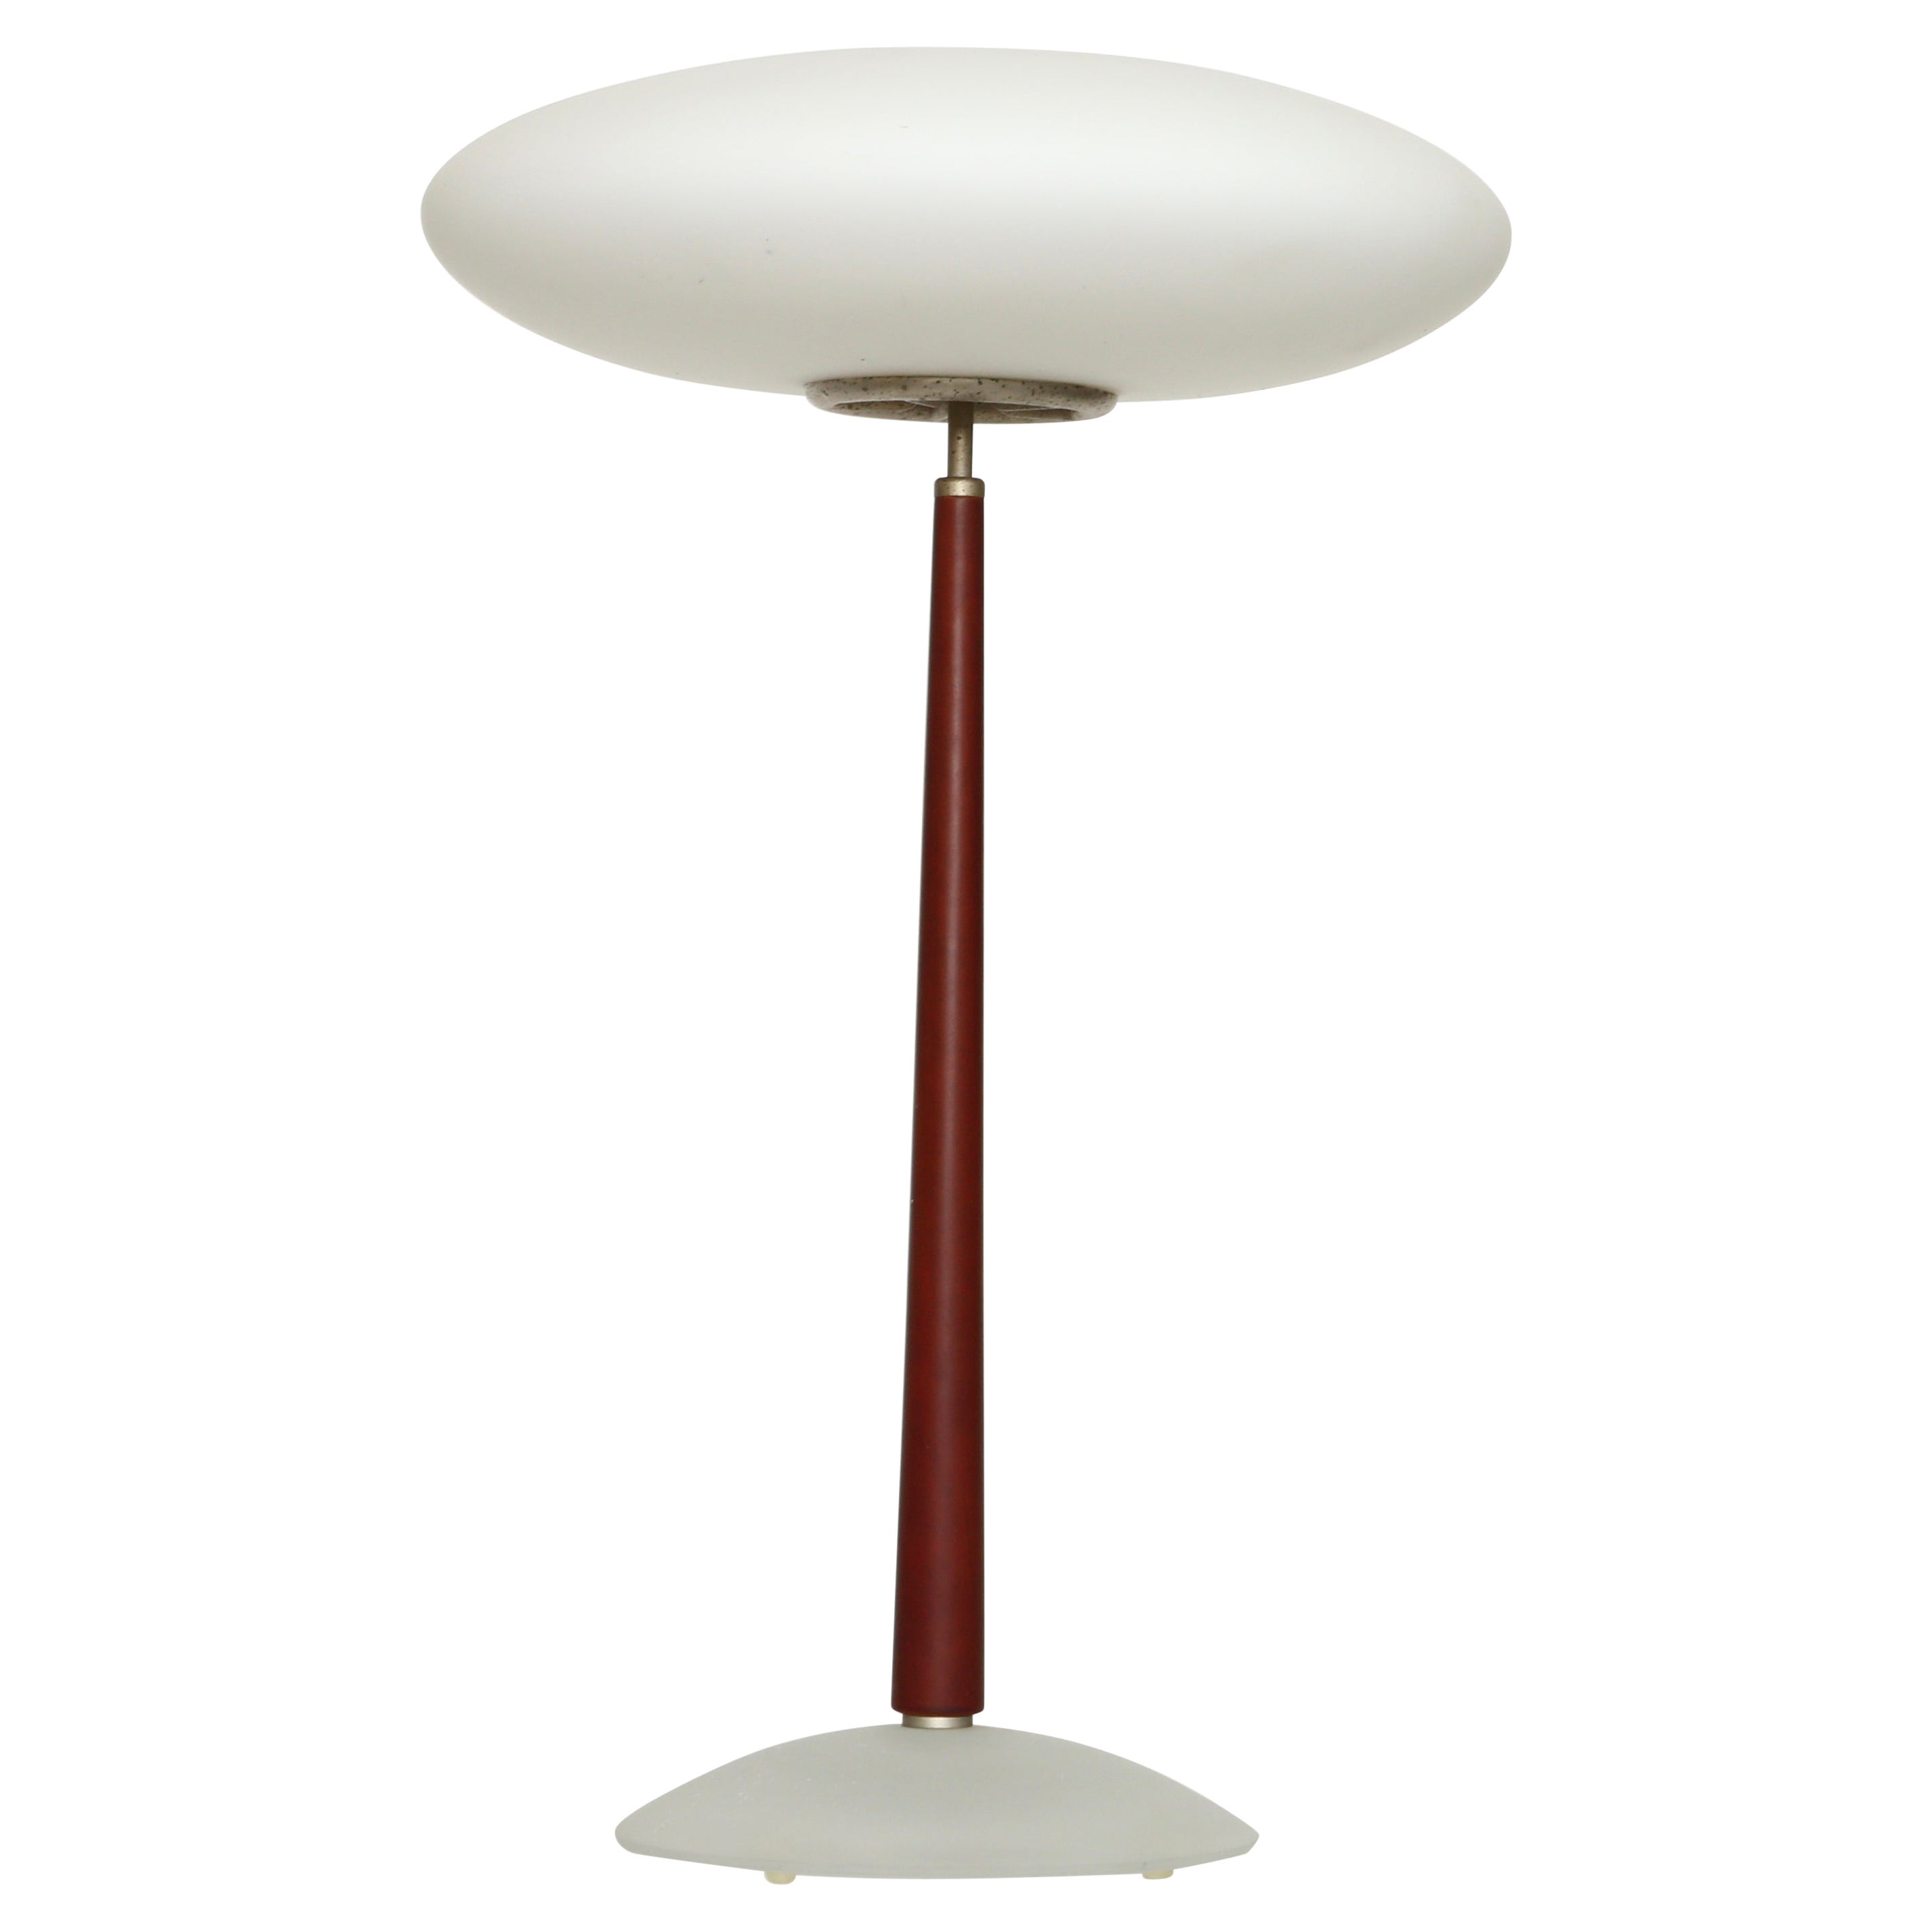 Arteluce "Pao" Table Lamp by Matteo at | arteluce pao, arteluce table lamp, arteluce lampe